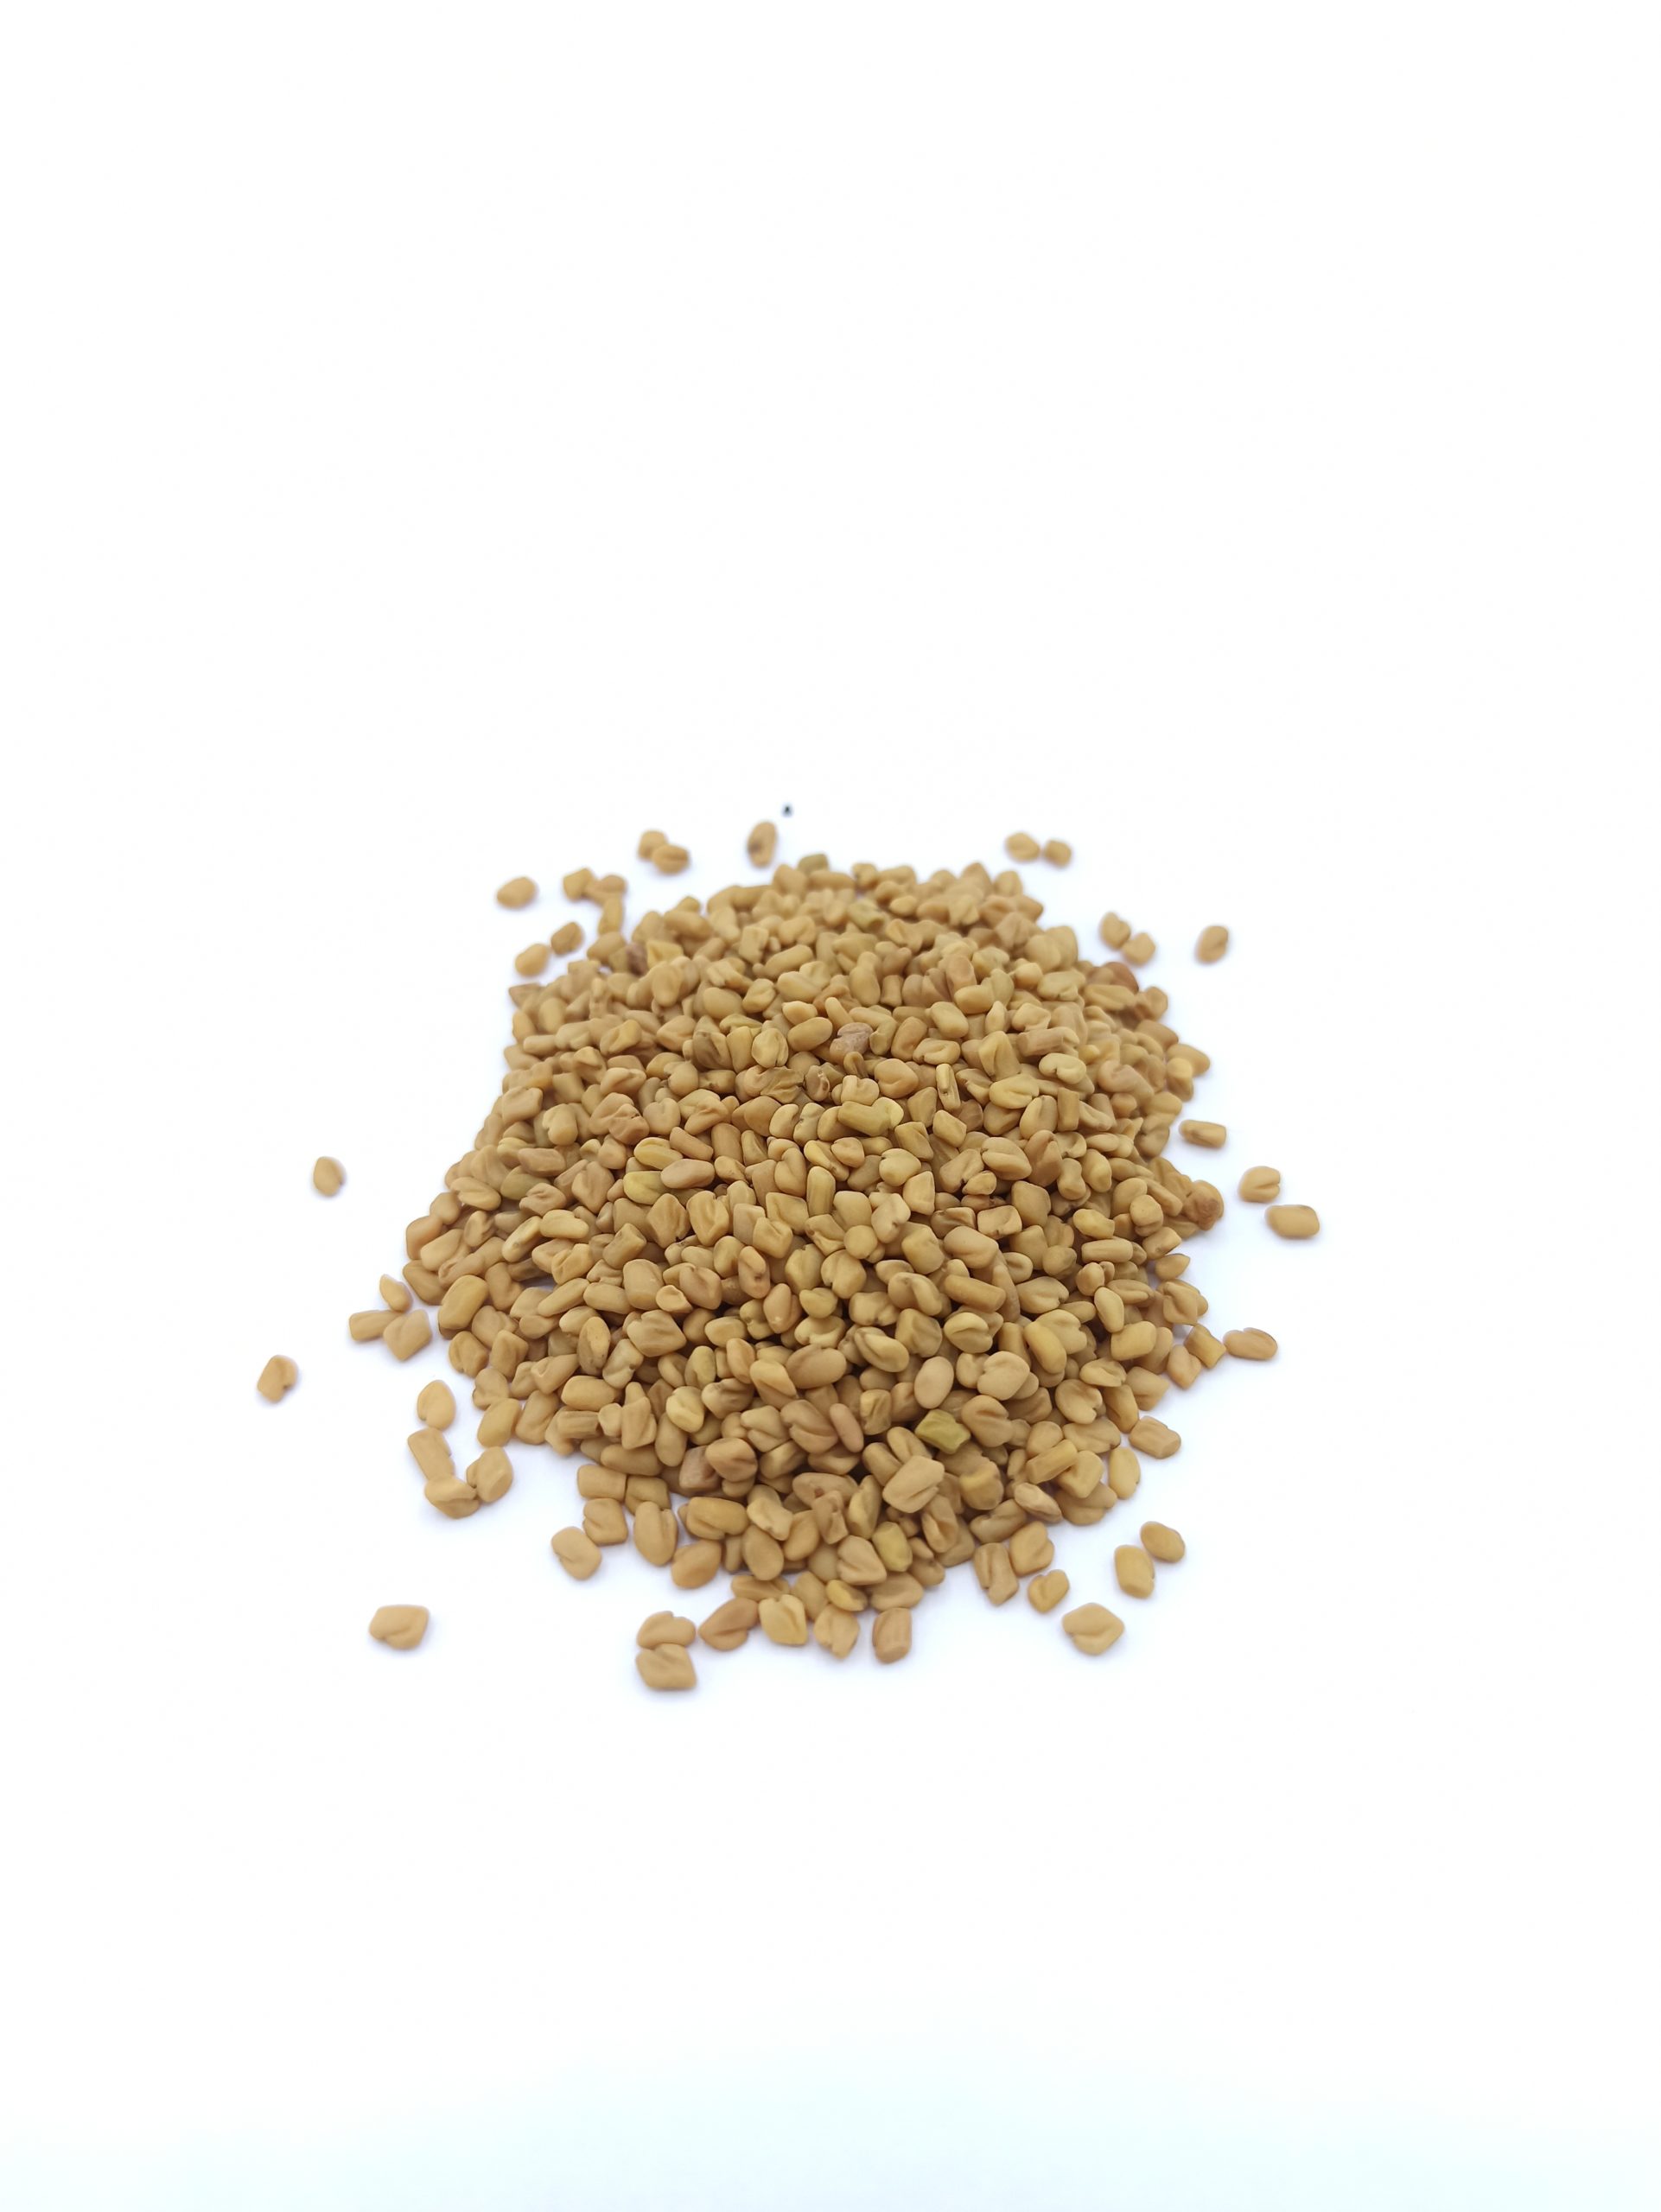 Fenugrec (graines ou poudre) - Achat, usage et recettes - L'ile aux épices